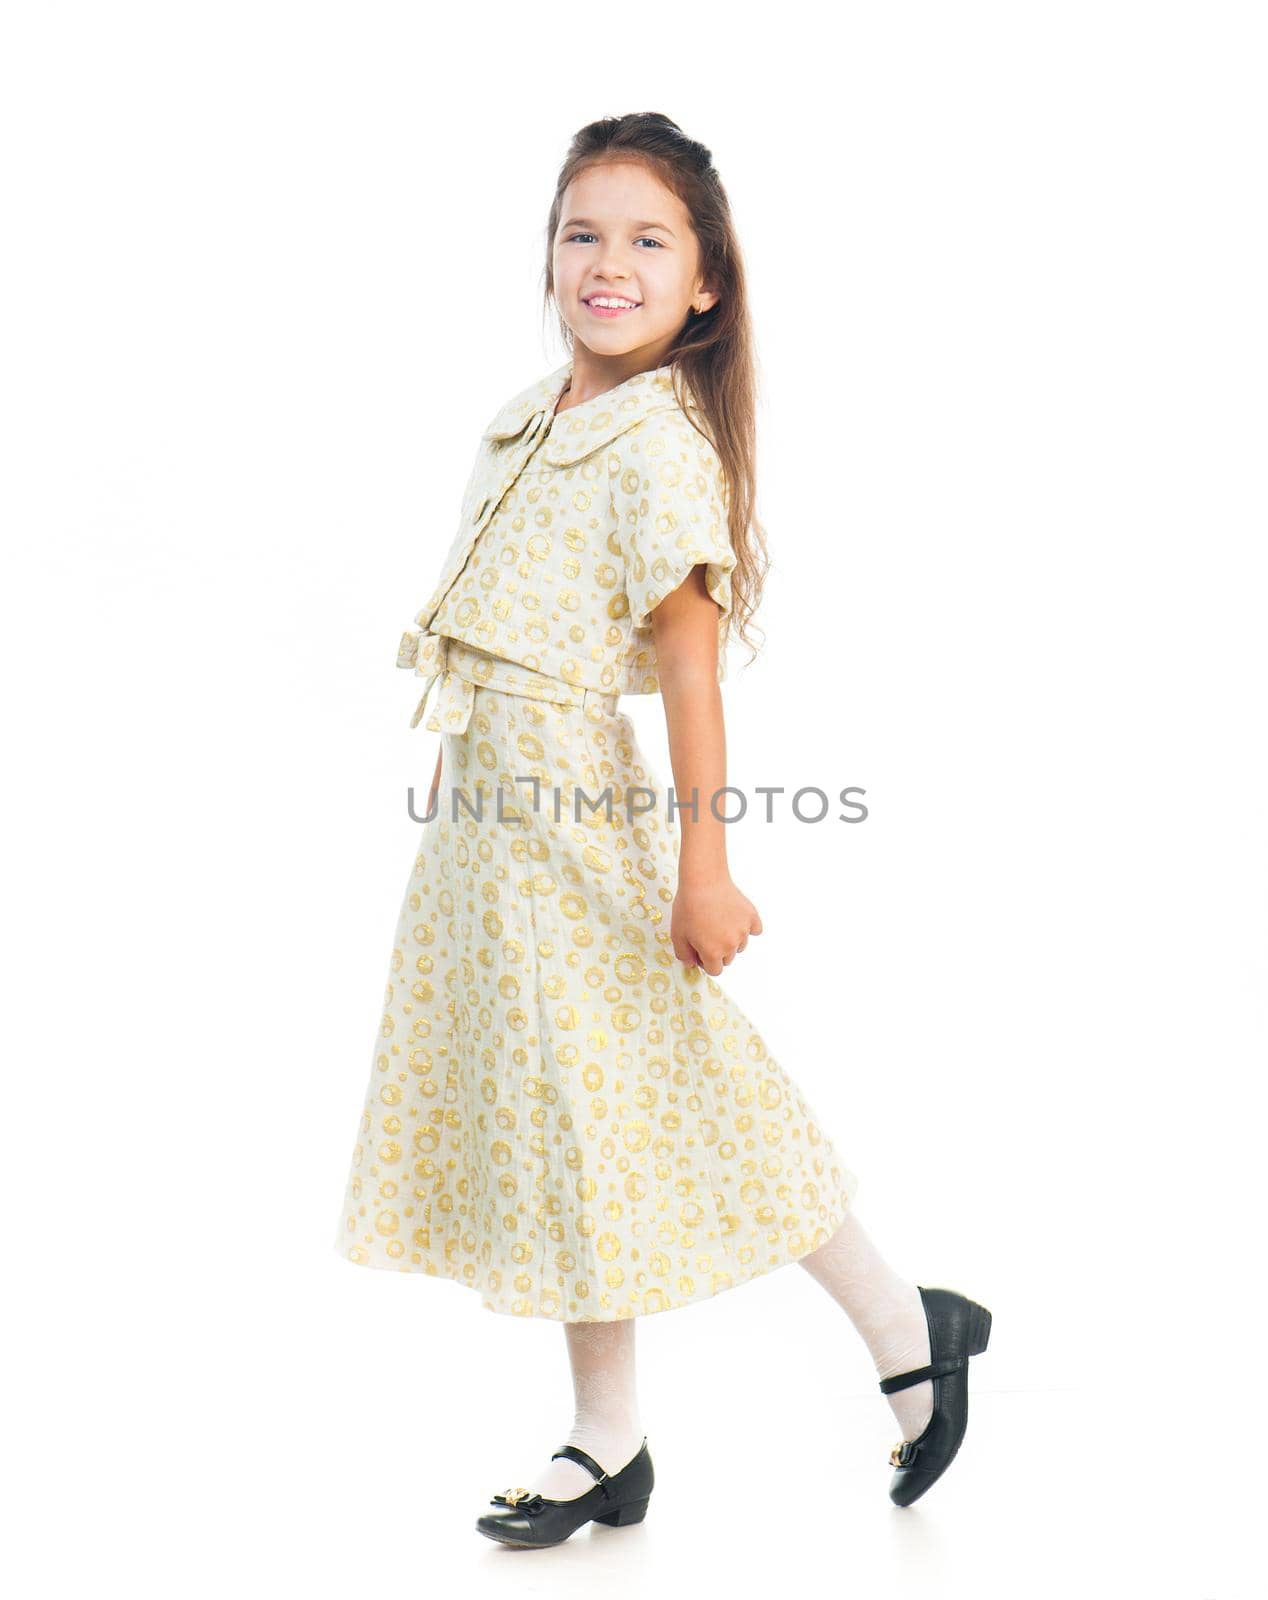 Cute little girl in a light dress by GekaSkr